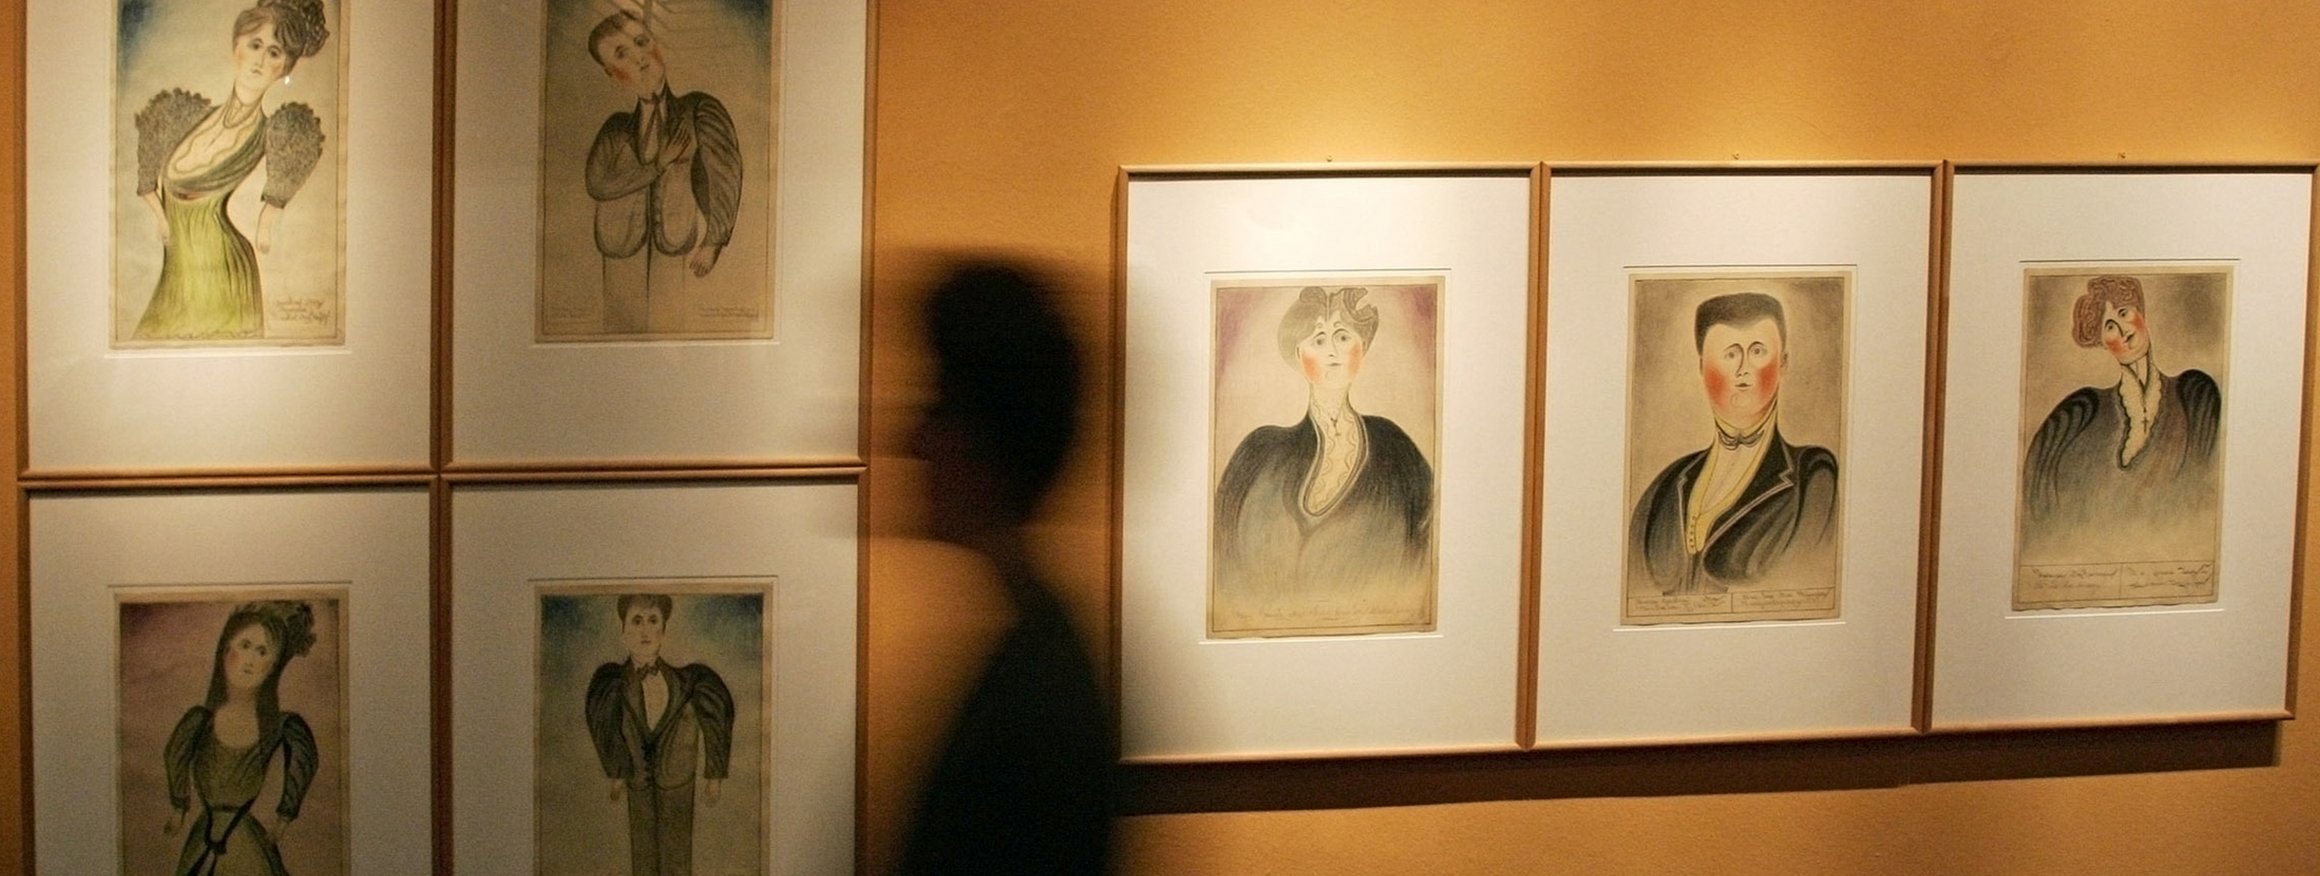 Das Foto zeigt eine menschliche Silhouette, die an Gemälden vorbeiläuft. Die Kunstwerke zeigen Selbstporträts von Psychiatrie-Erfahrenen.